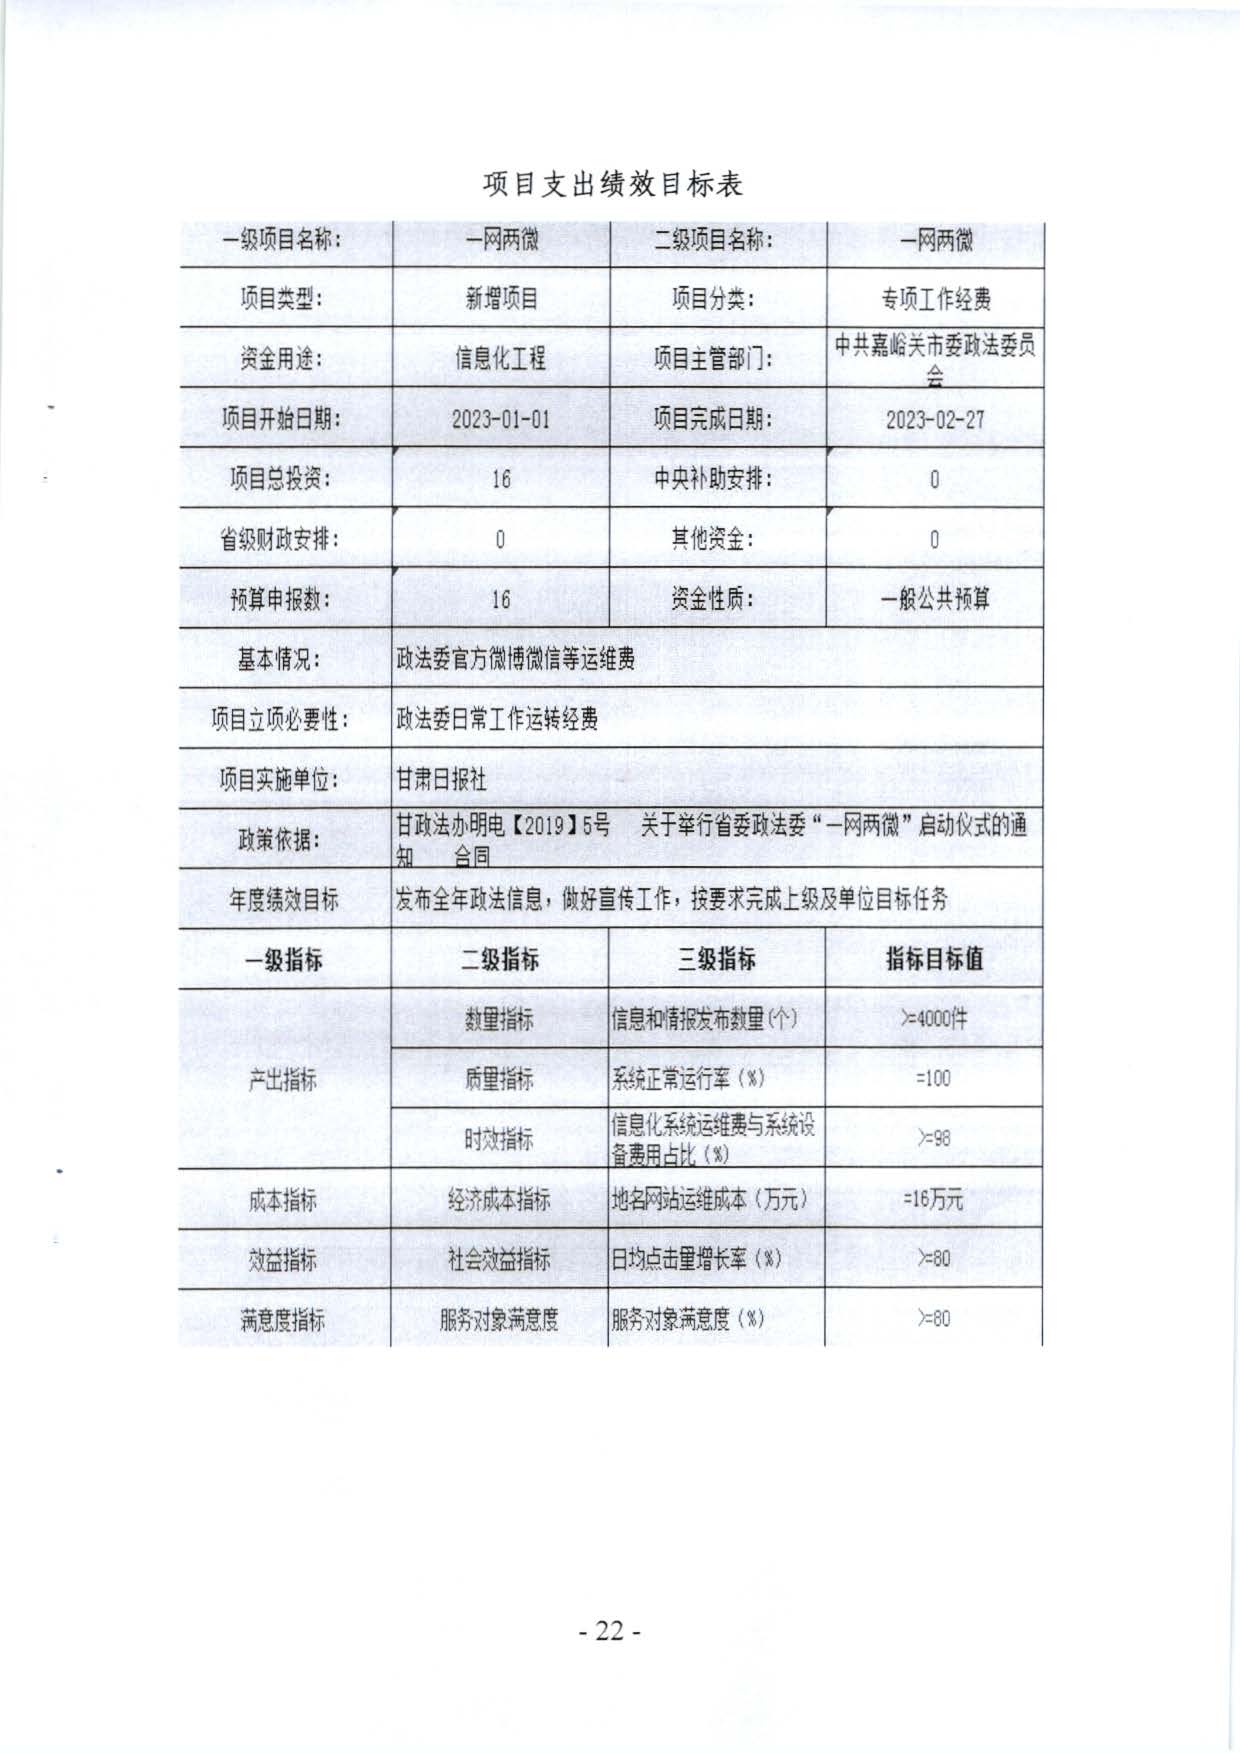 嘉峪关市委政法委2023年预算公开情况说明(1)_页面_22